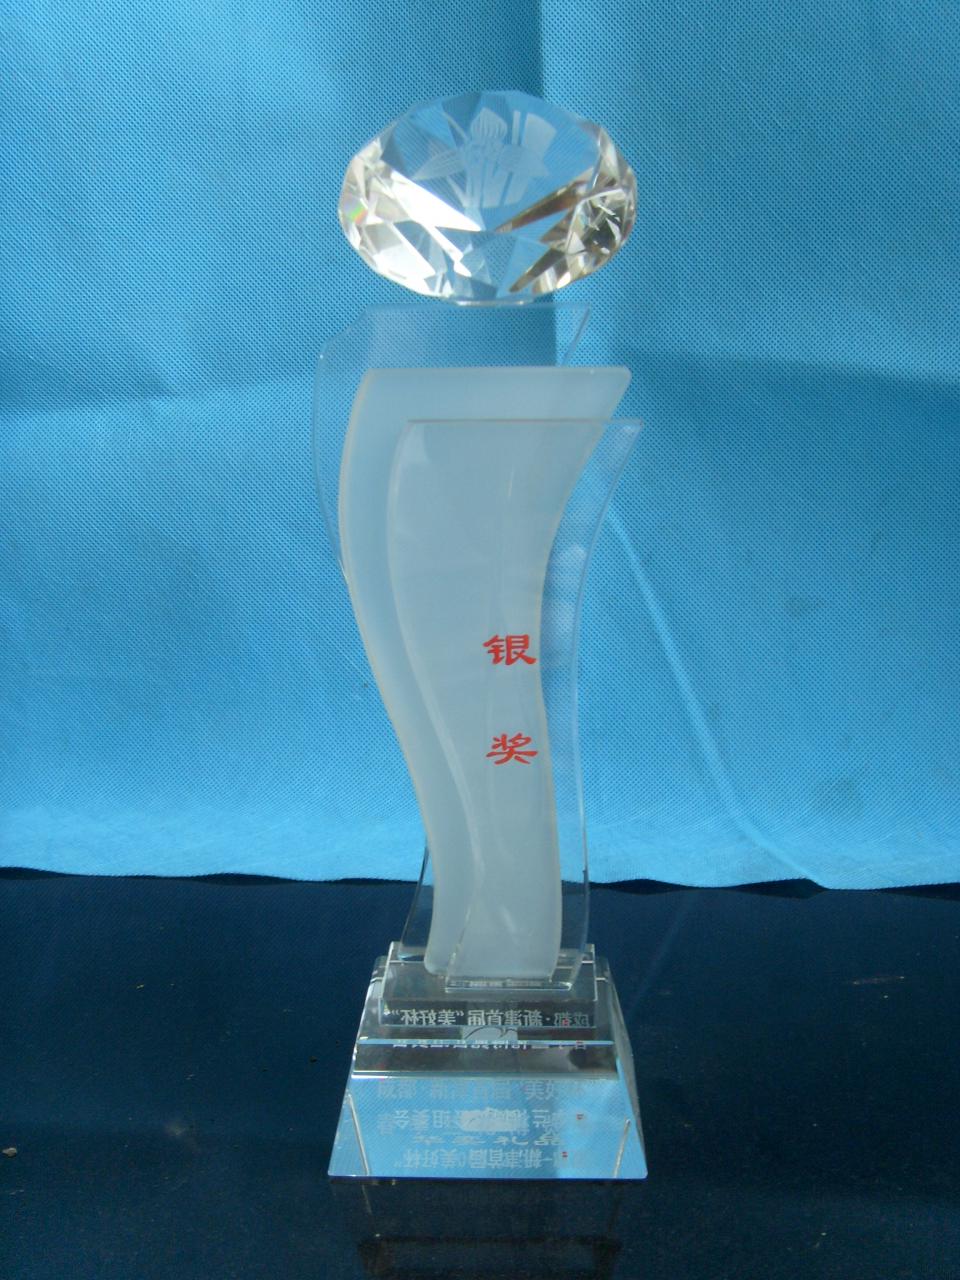 2006年成都-新津首届“美好杯”春季兰博会-银奖